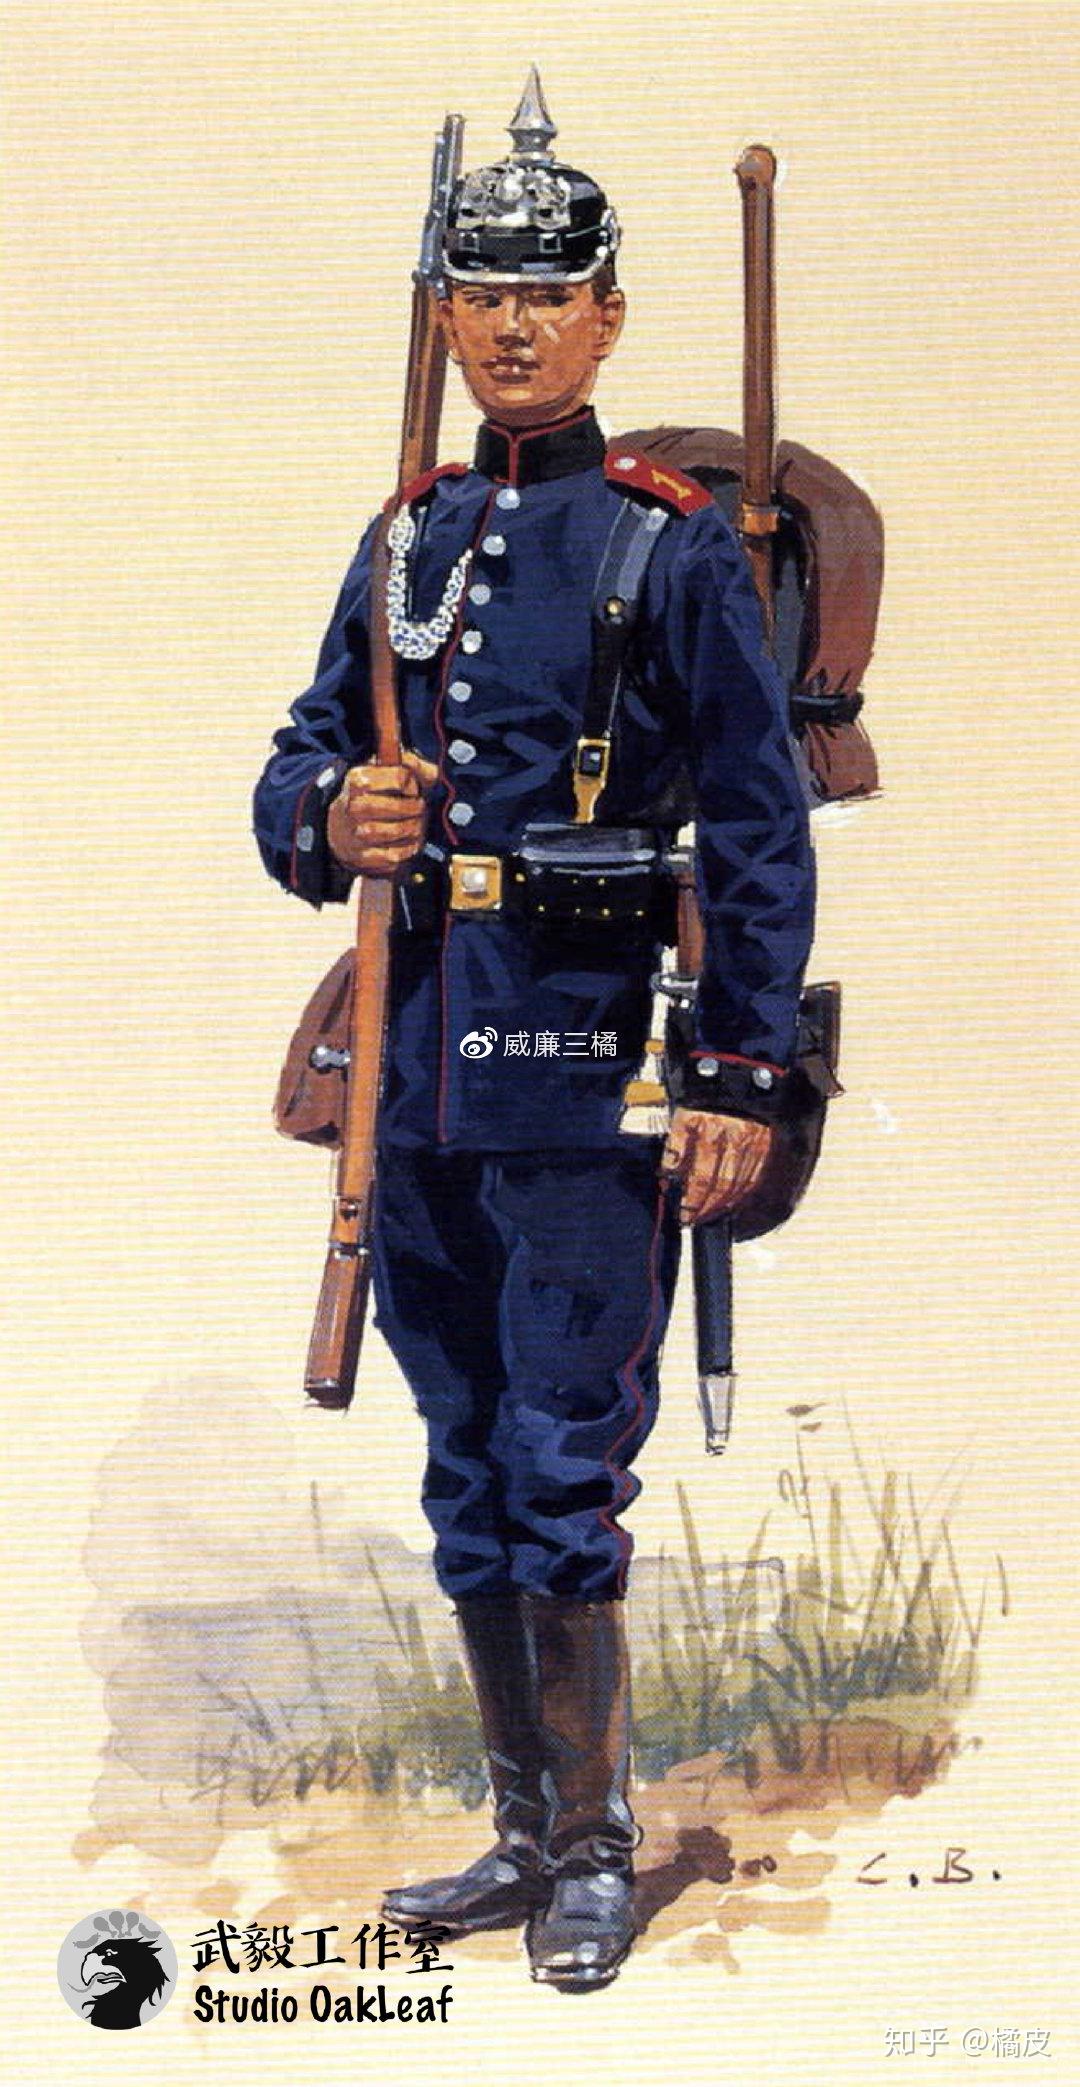 普鲁士军医中校注释:这名军医官佩戴红十字袖章和大尺寸勋略板,该勋